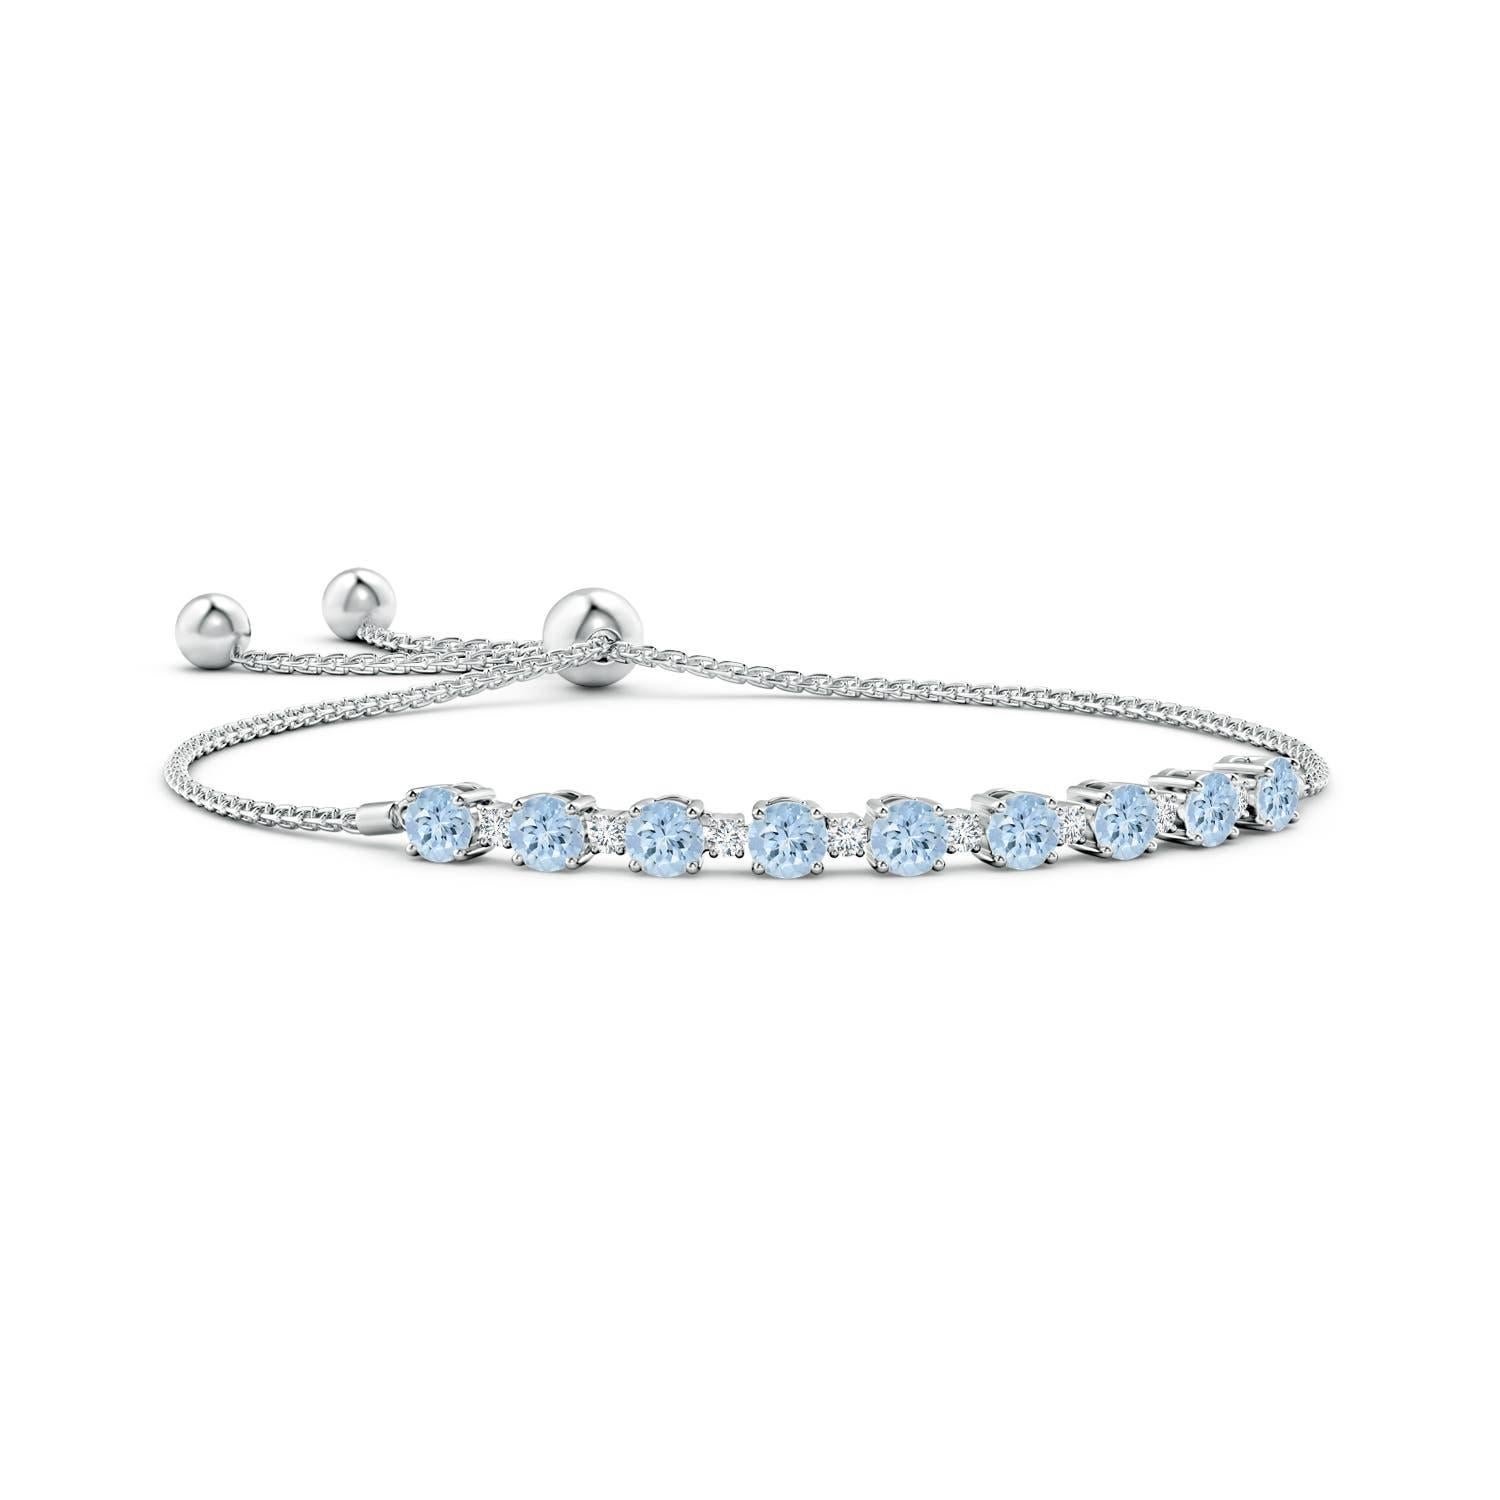 Meeresblaue Aquamarine und glitzernde Diamanten vereinen sich auf diesem Tennis-Bolo-Armband aus 14 Karat Weißgold. Sie sind abwechselnd mit Zacken besetzt und sorgen für einen klassischen Look. Dieses Armband ist verstellbar und passt den meisten